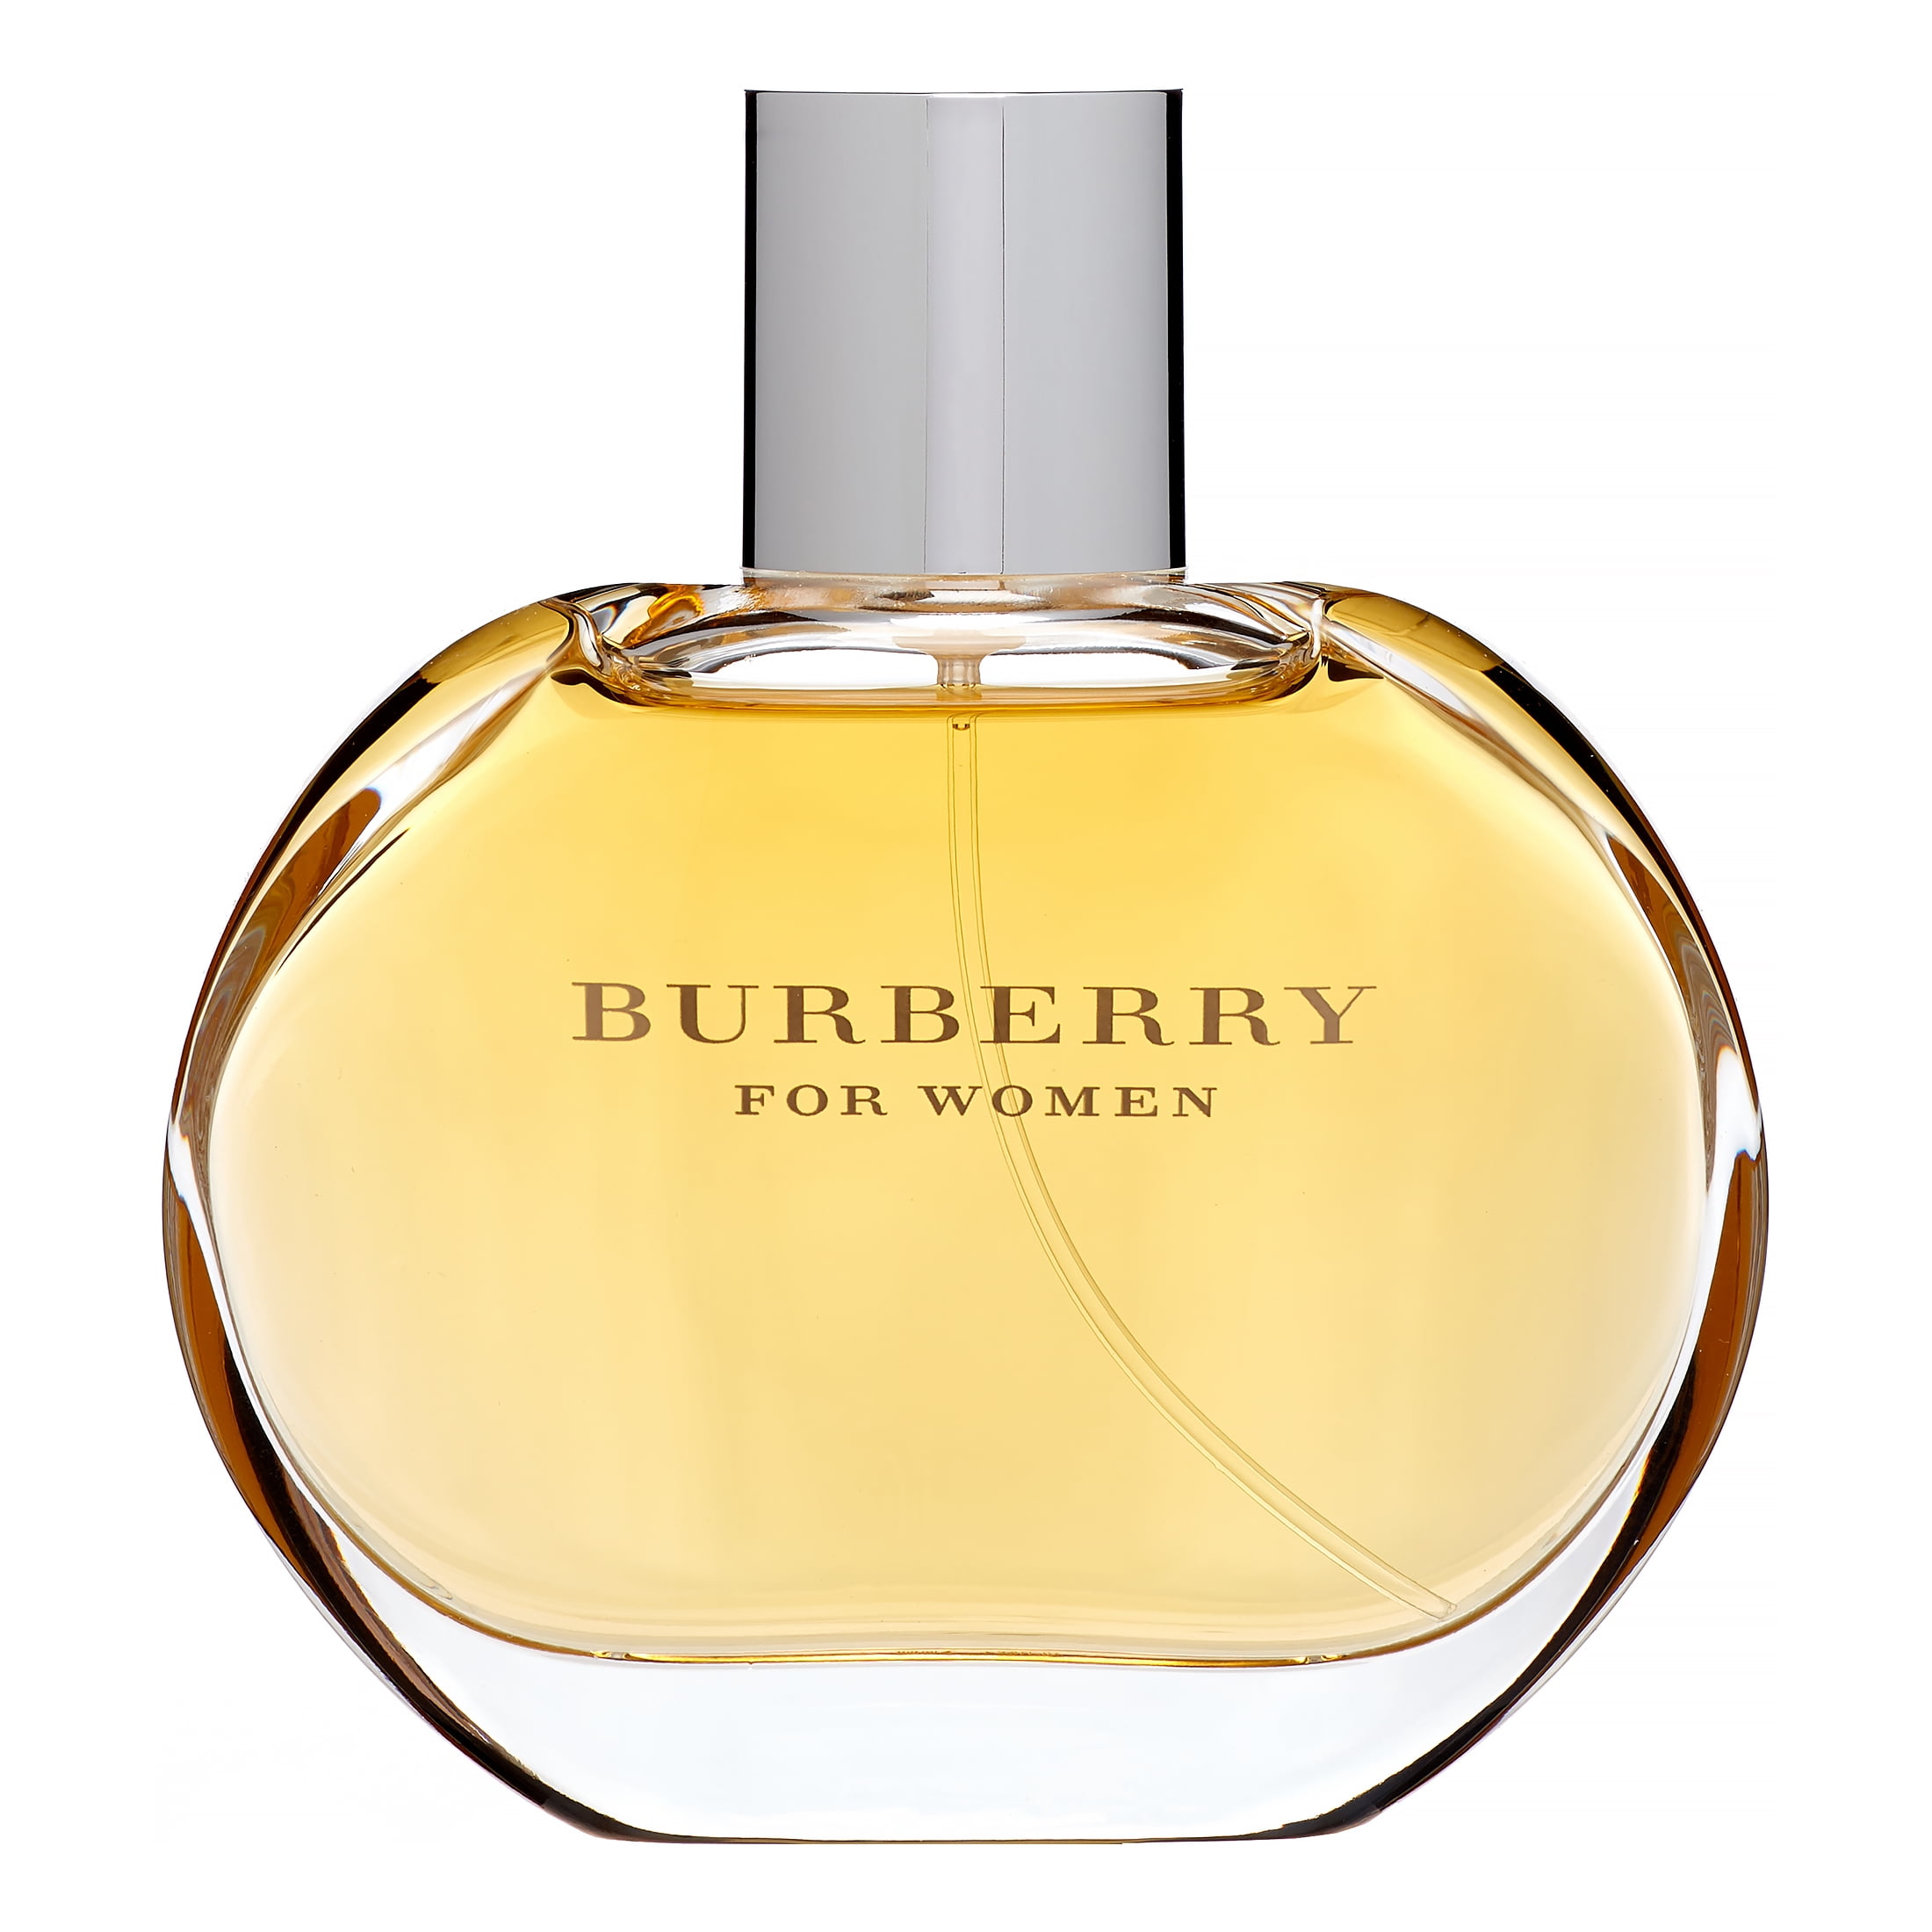 Burberry Eau de Parfum Spray for Women